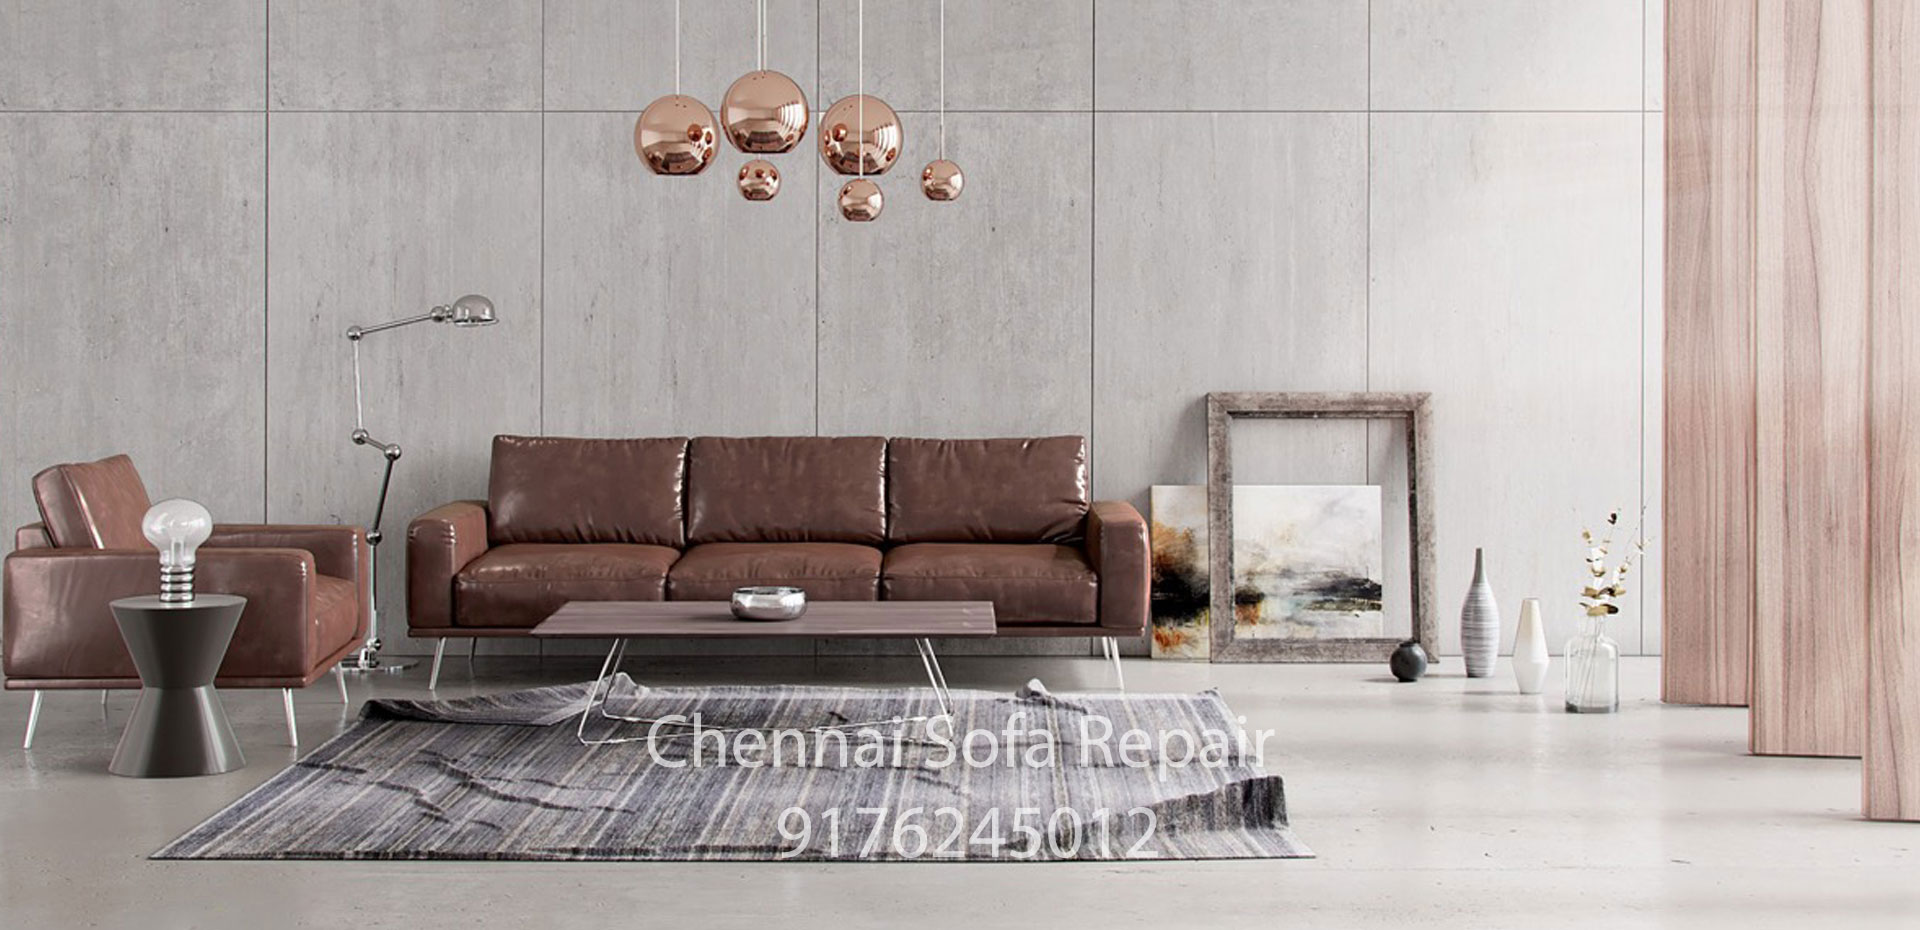 sofa renovation Kottur Chennai